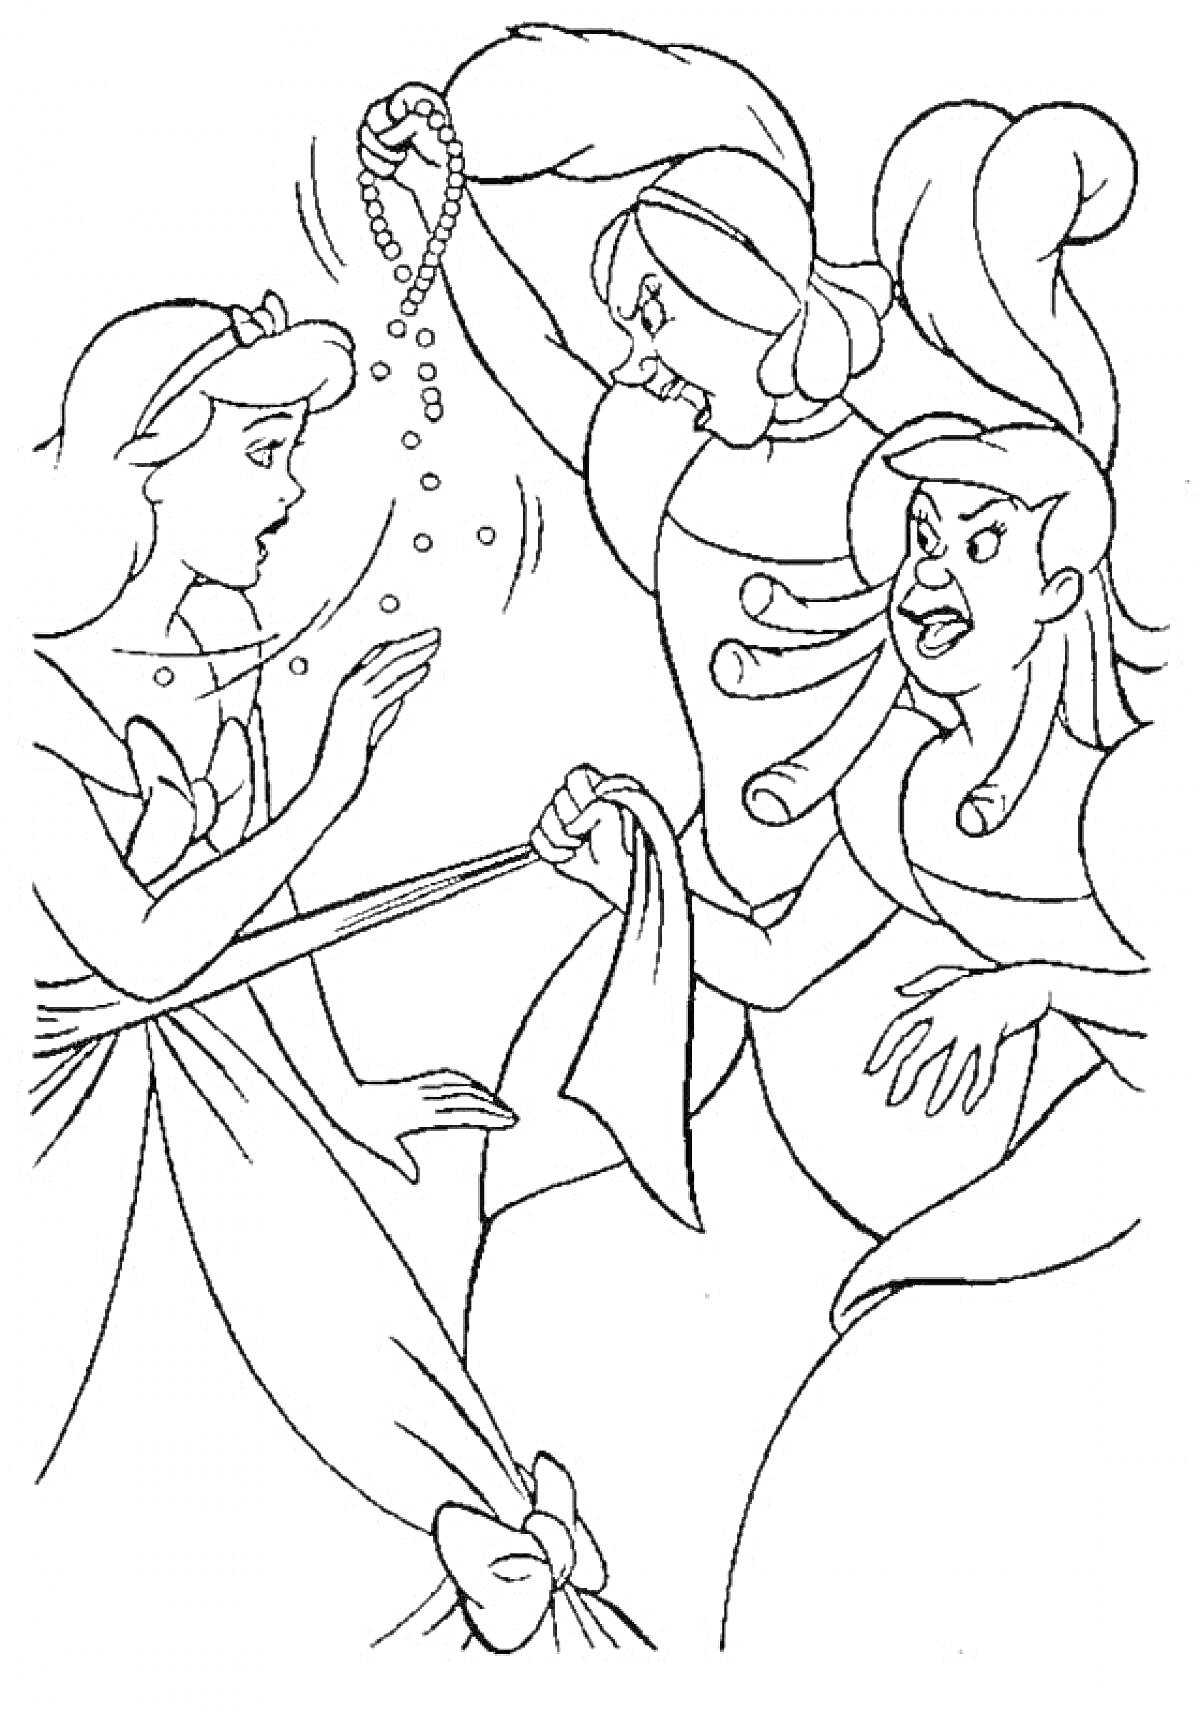 Раскраска Две сестры с агрессивным поведением, одна держит бус necklace, другая кричит на девушку с грустным лицом в платье